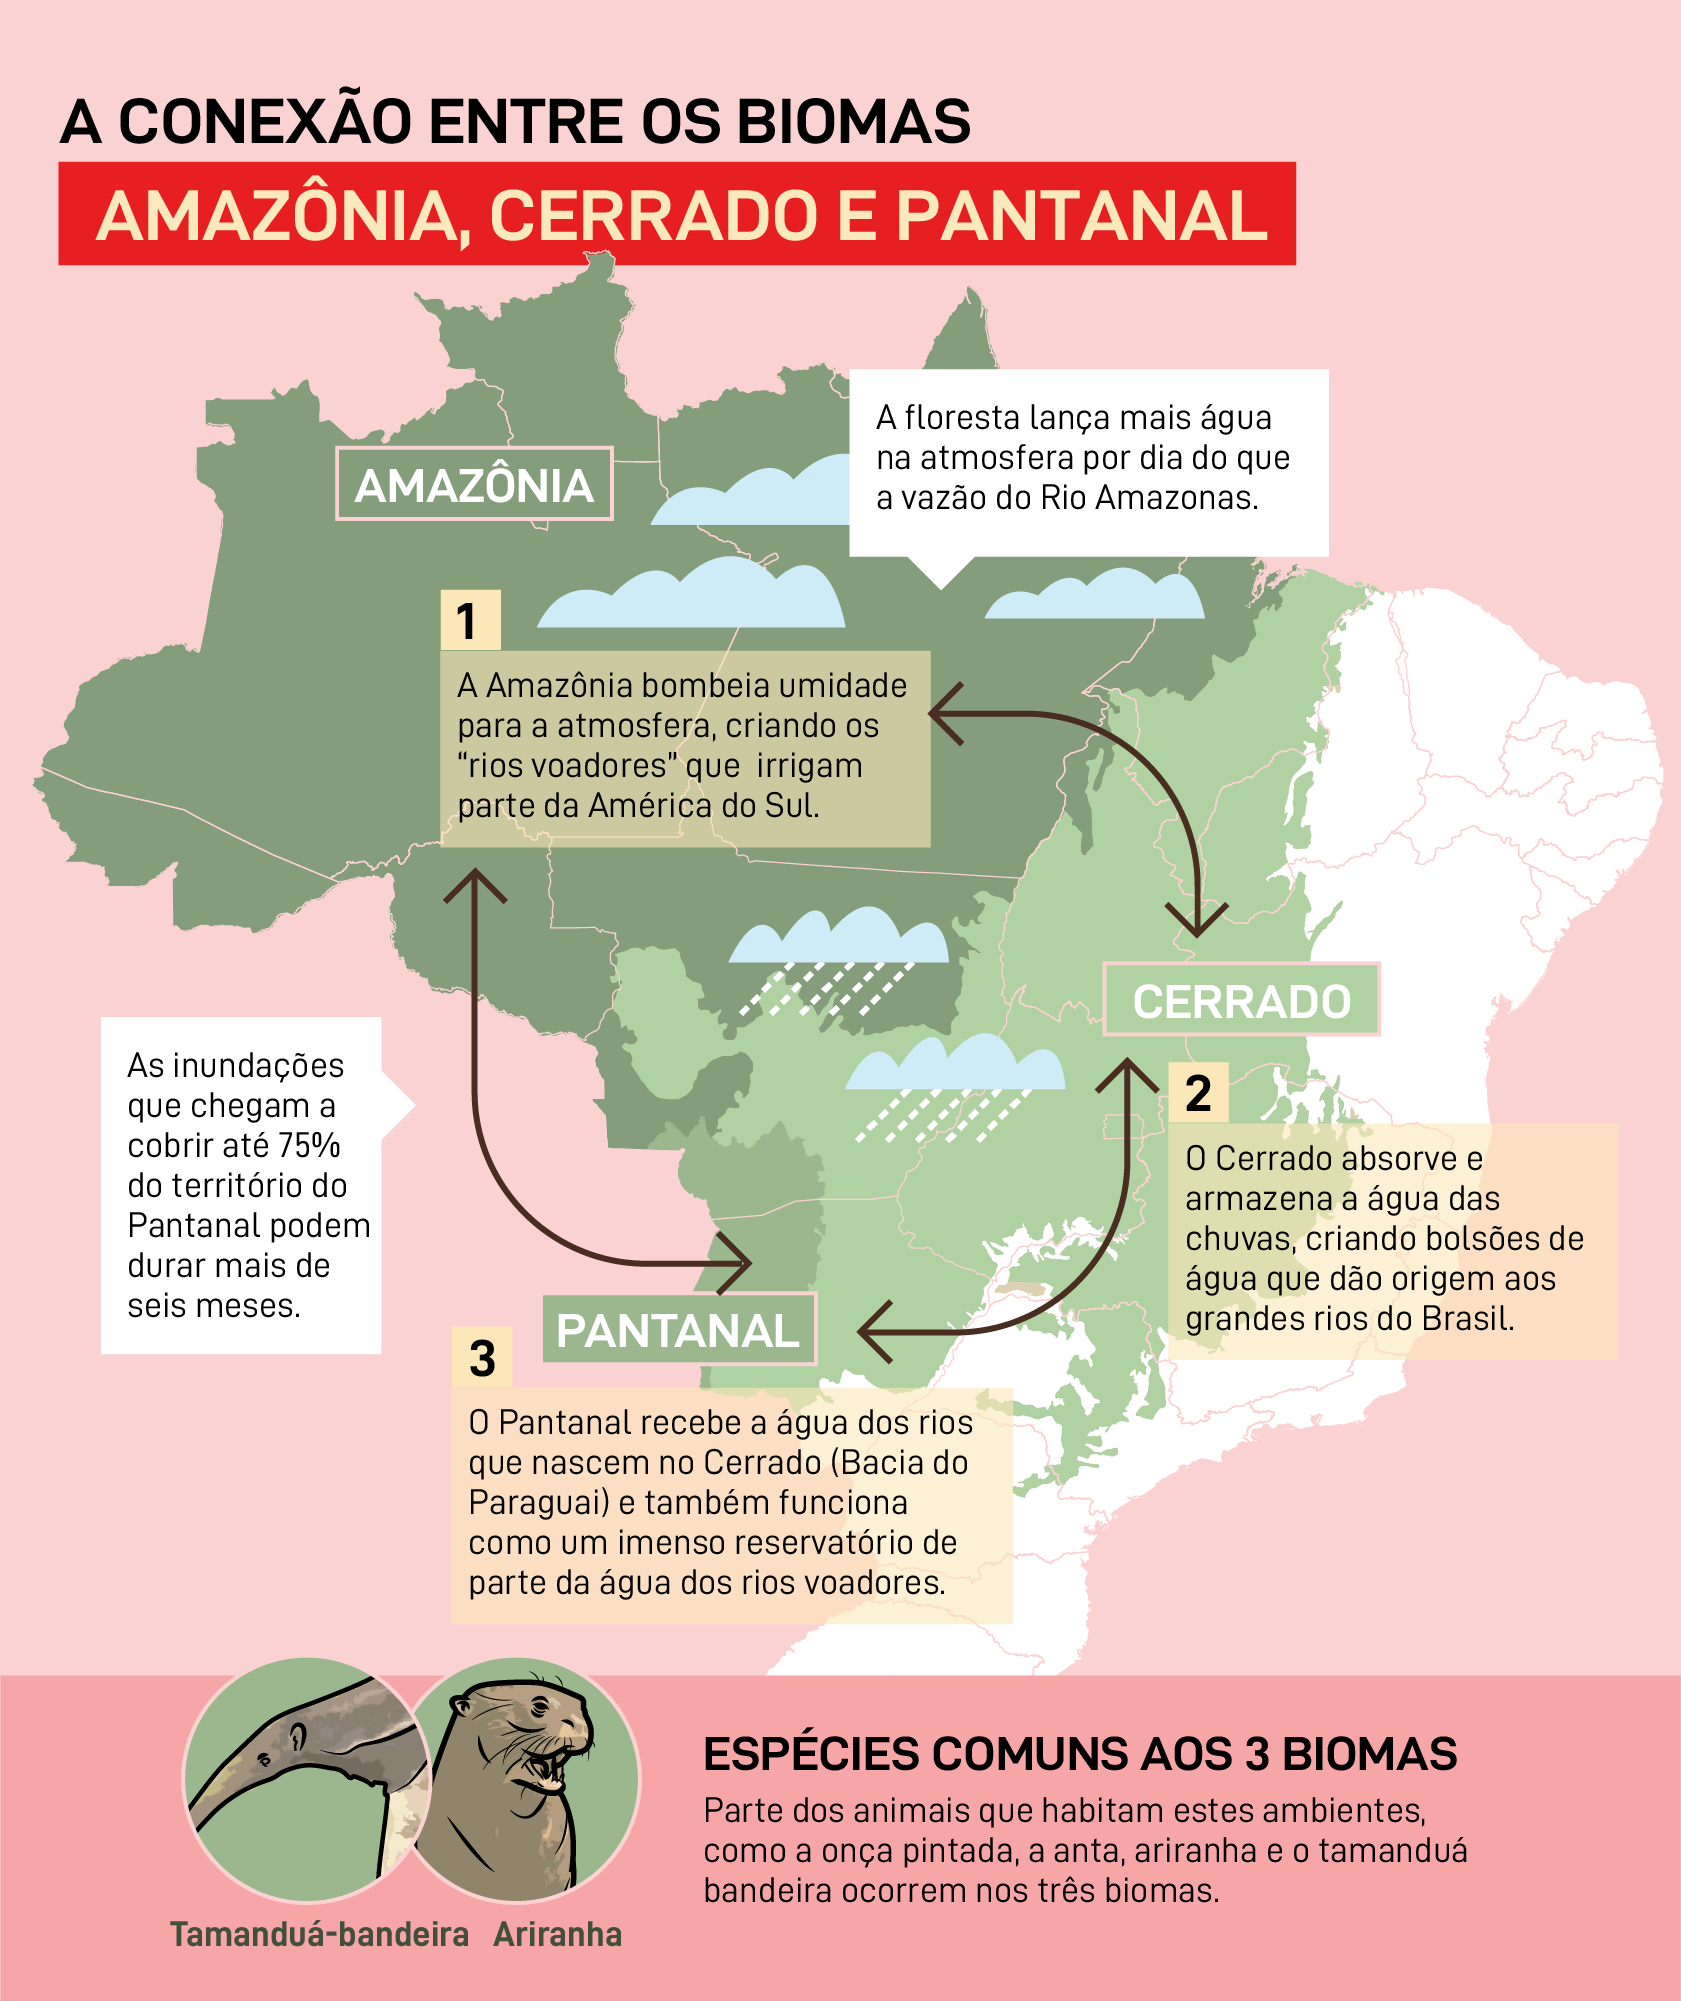 A conexão entre biomas Amazônia, Cerrado e Pantanal